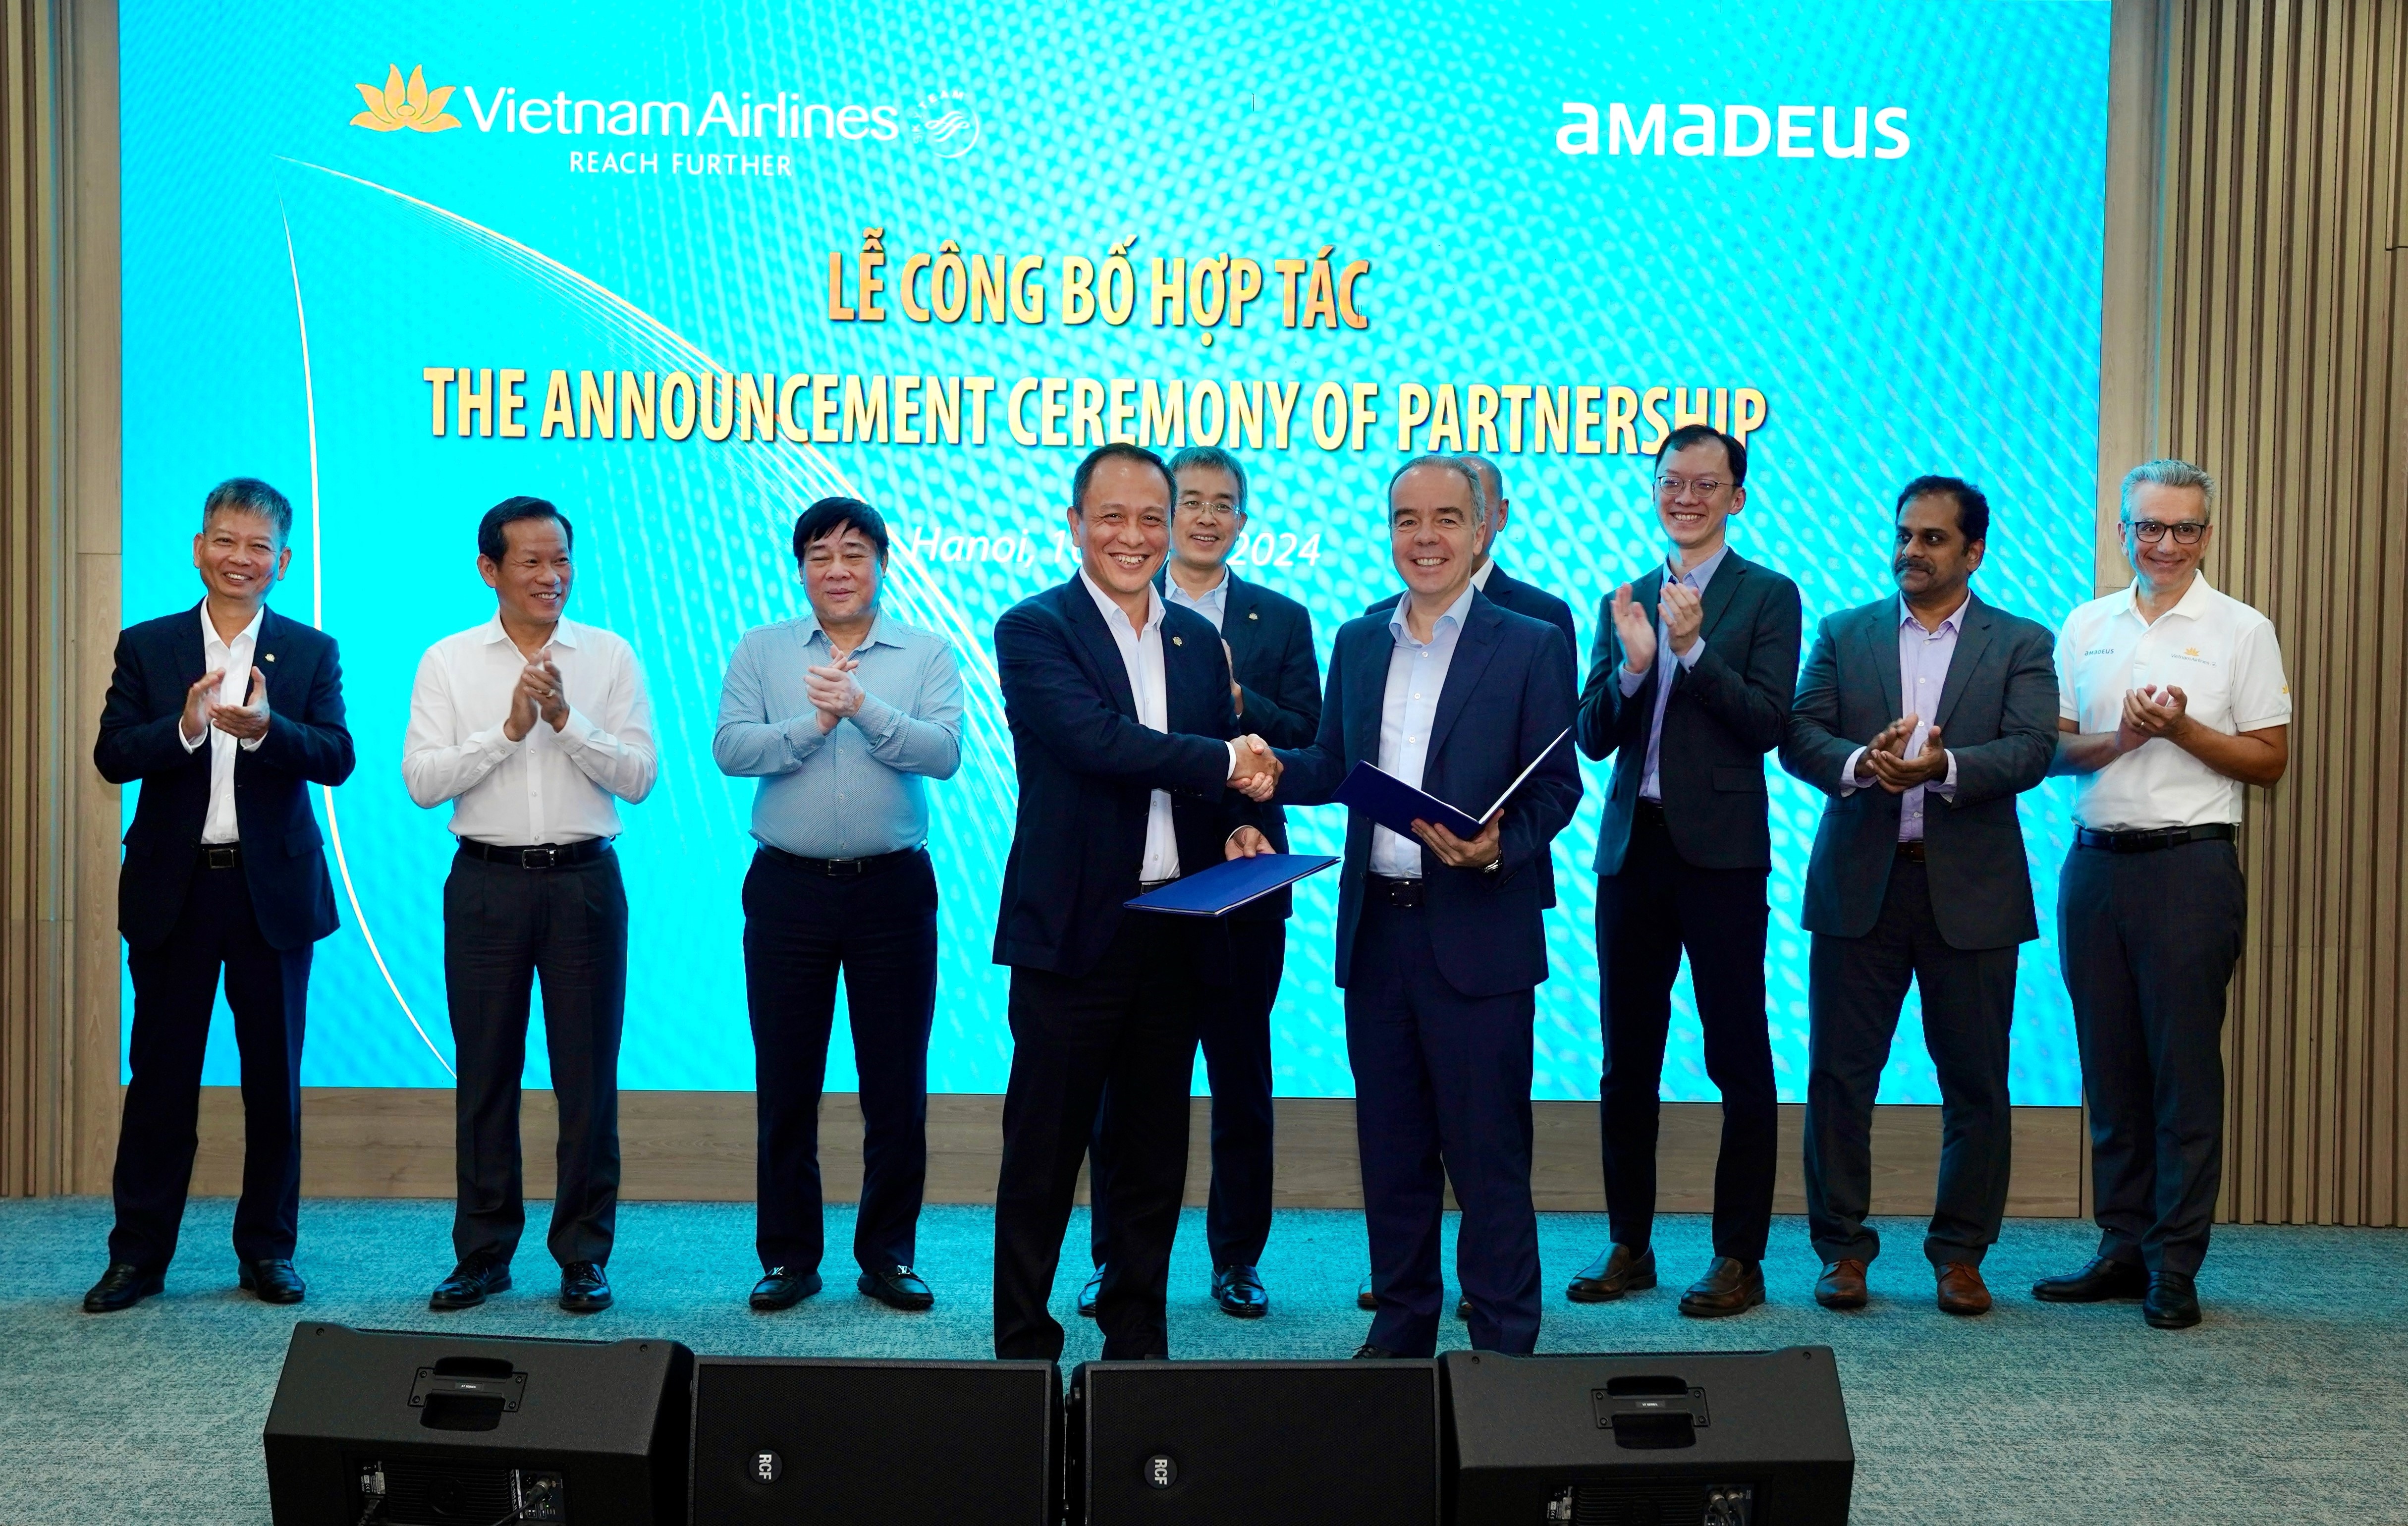 Amadeus cung cấp cho Vietnam Airlines các giải pháp toàn diện về quản lý cung ứng chỗ, đặt chỗ, bán vé